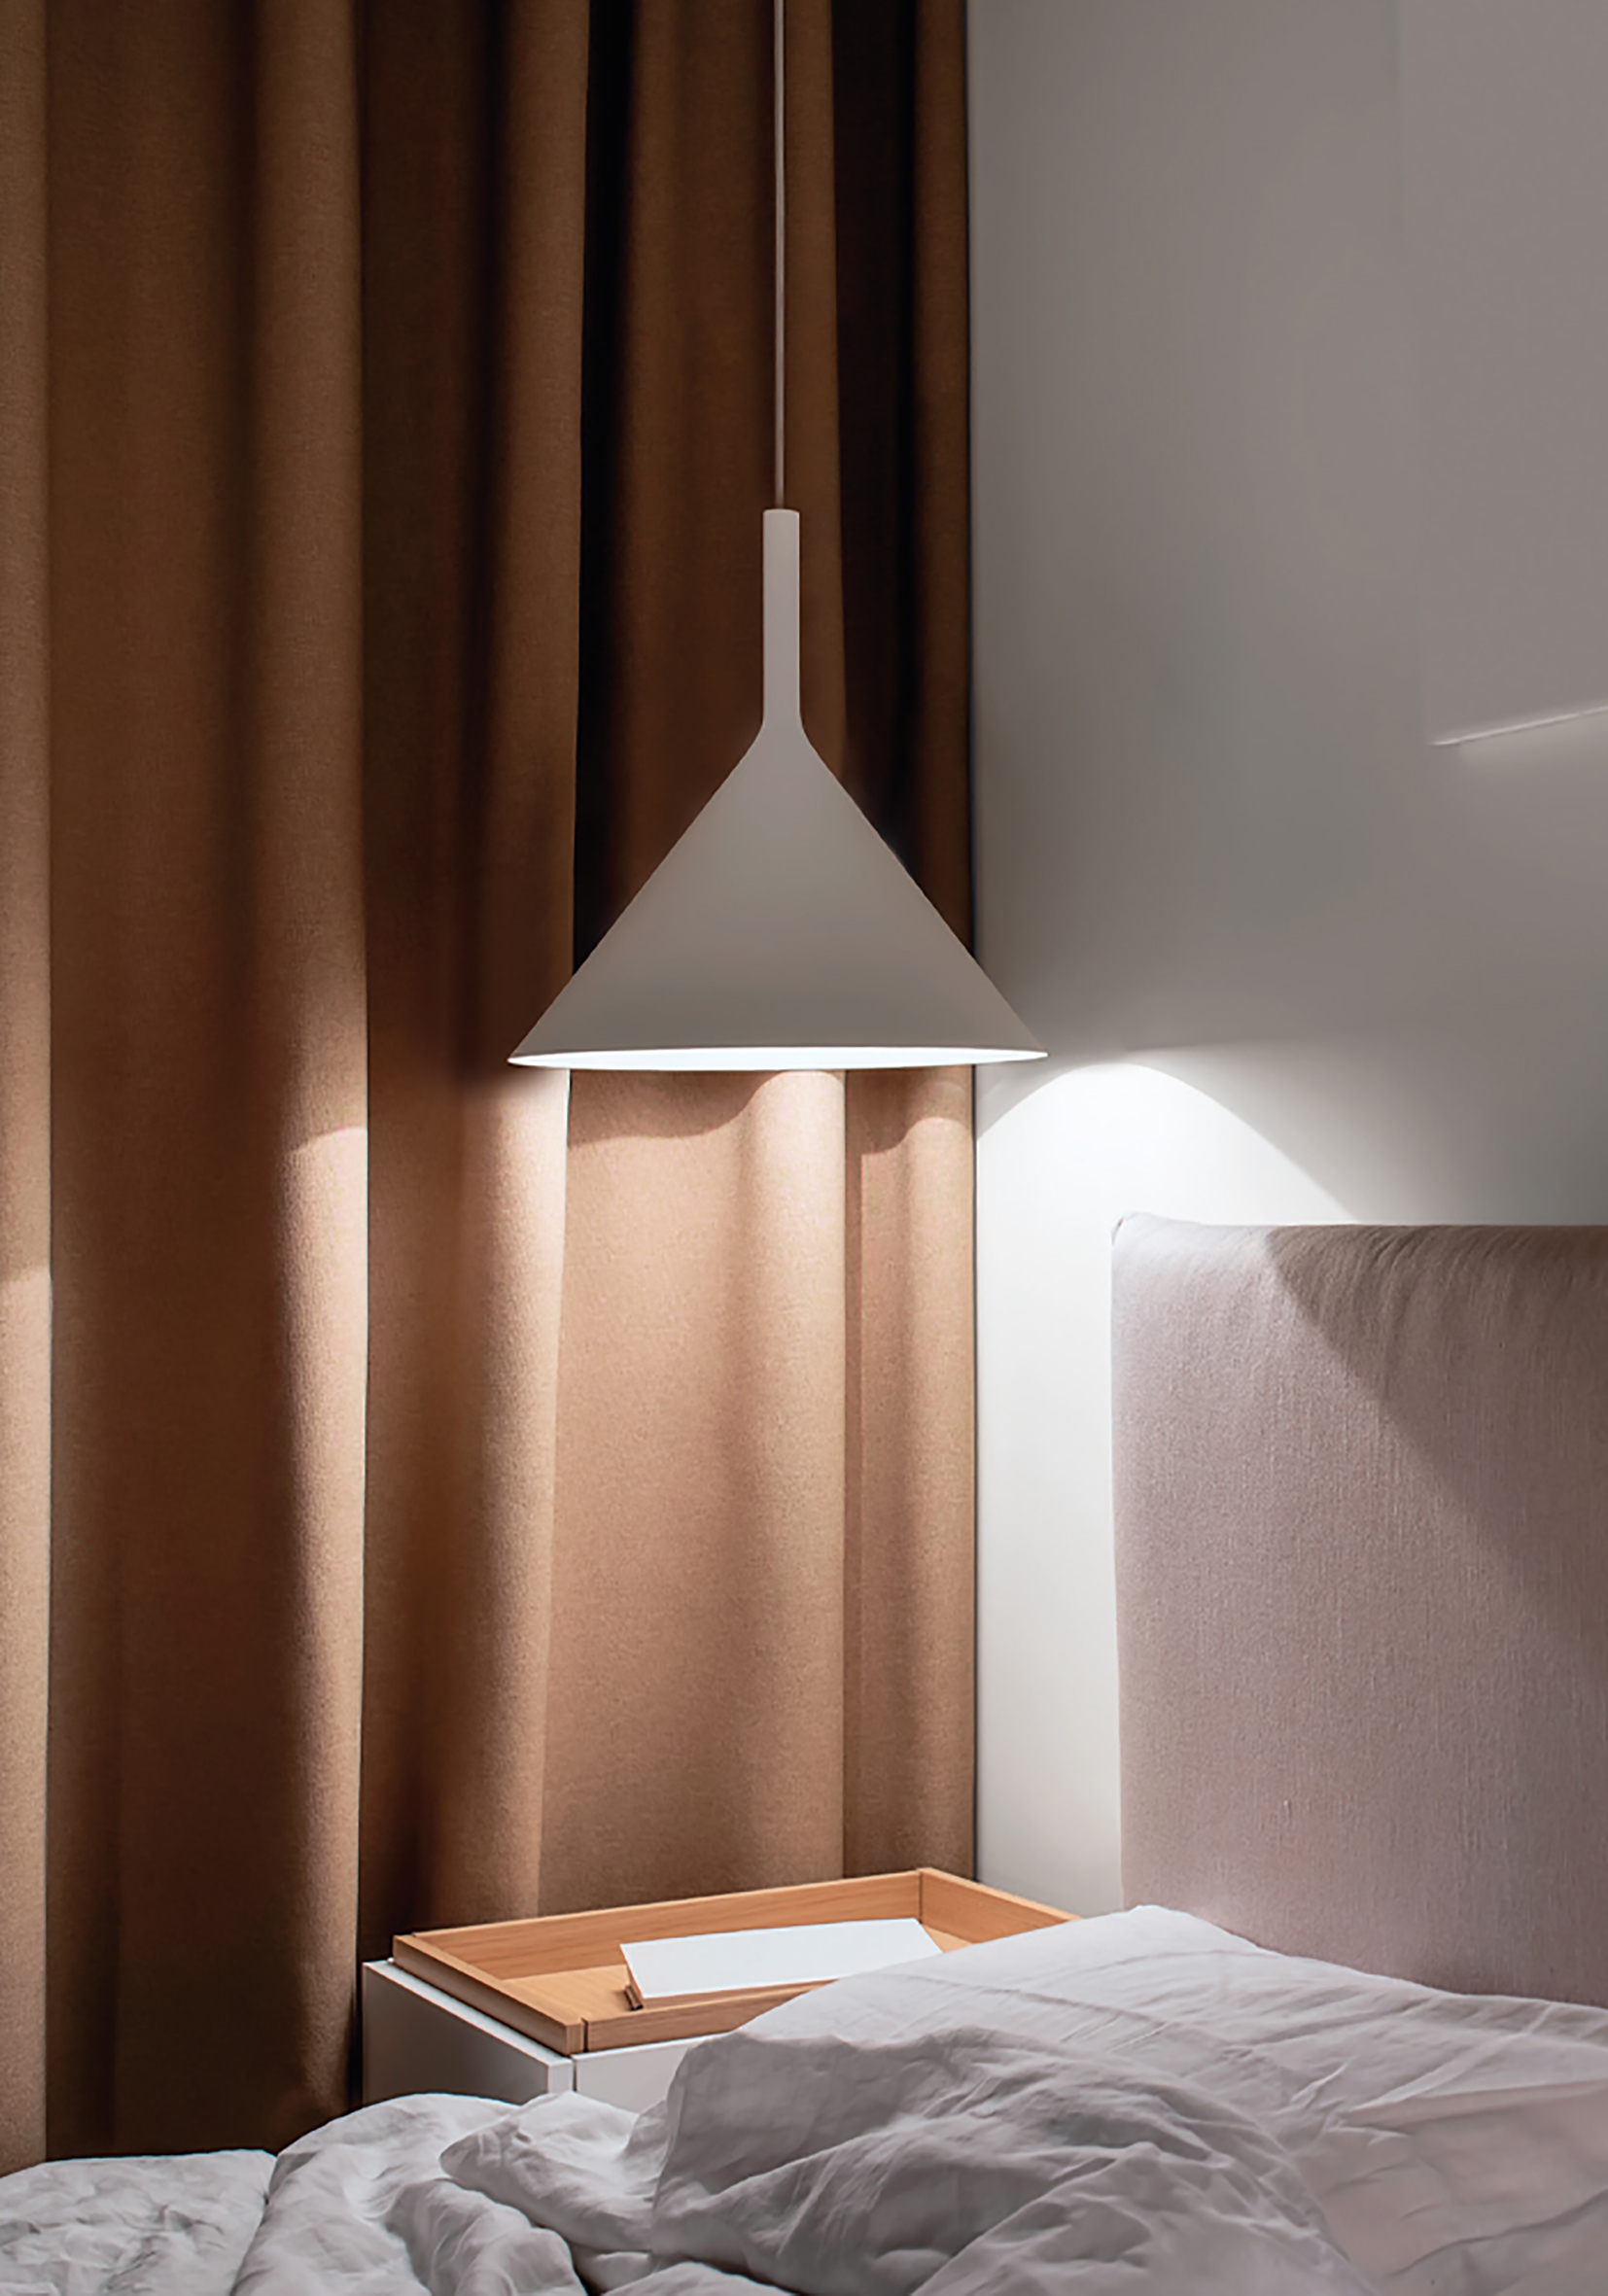 Materassino Air-bed - LAMPA LAMPA in vendita su Bep's